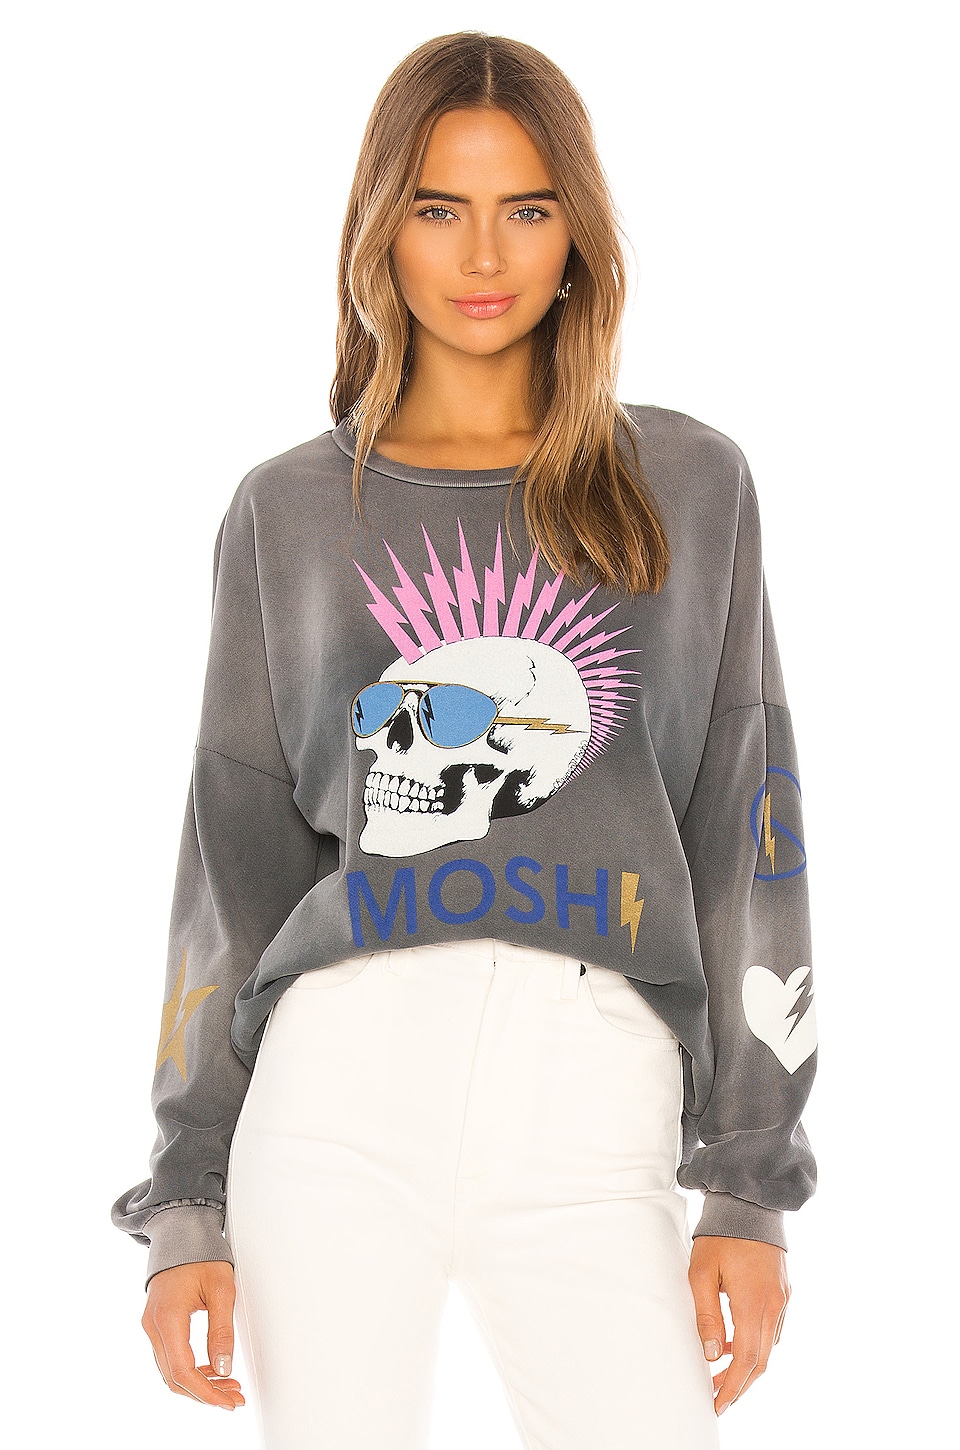 16 Best Women's Sweatshirts to Shop Now — Top Hoodies and Crewnecks for  Women